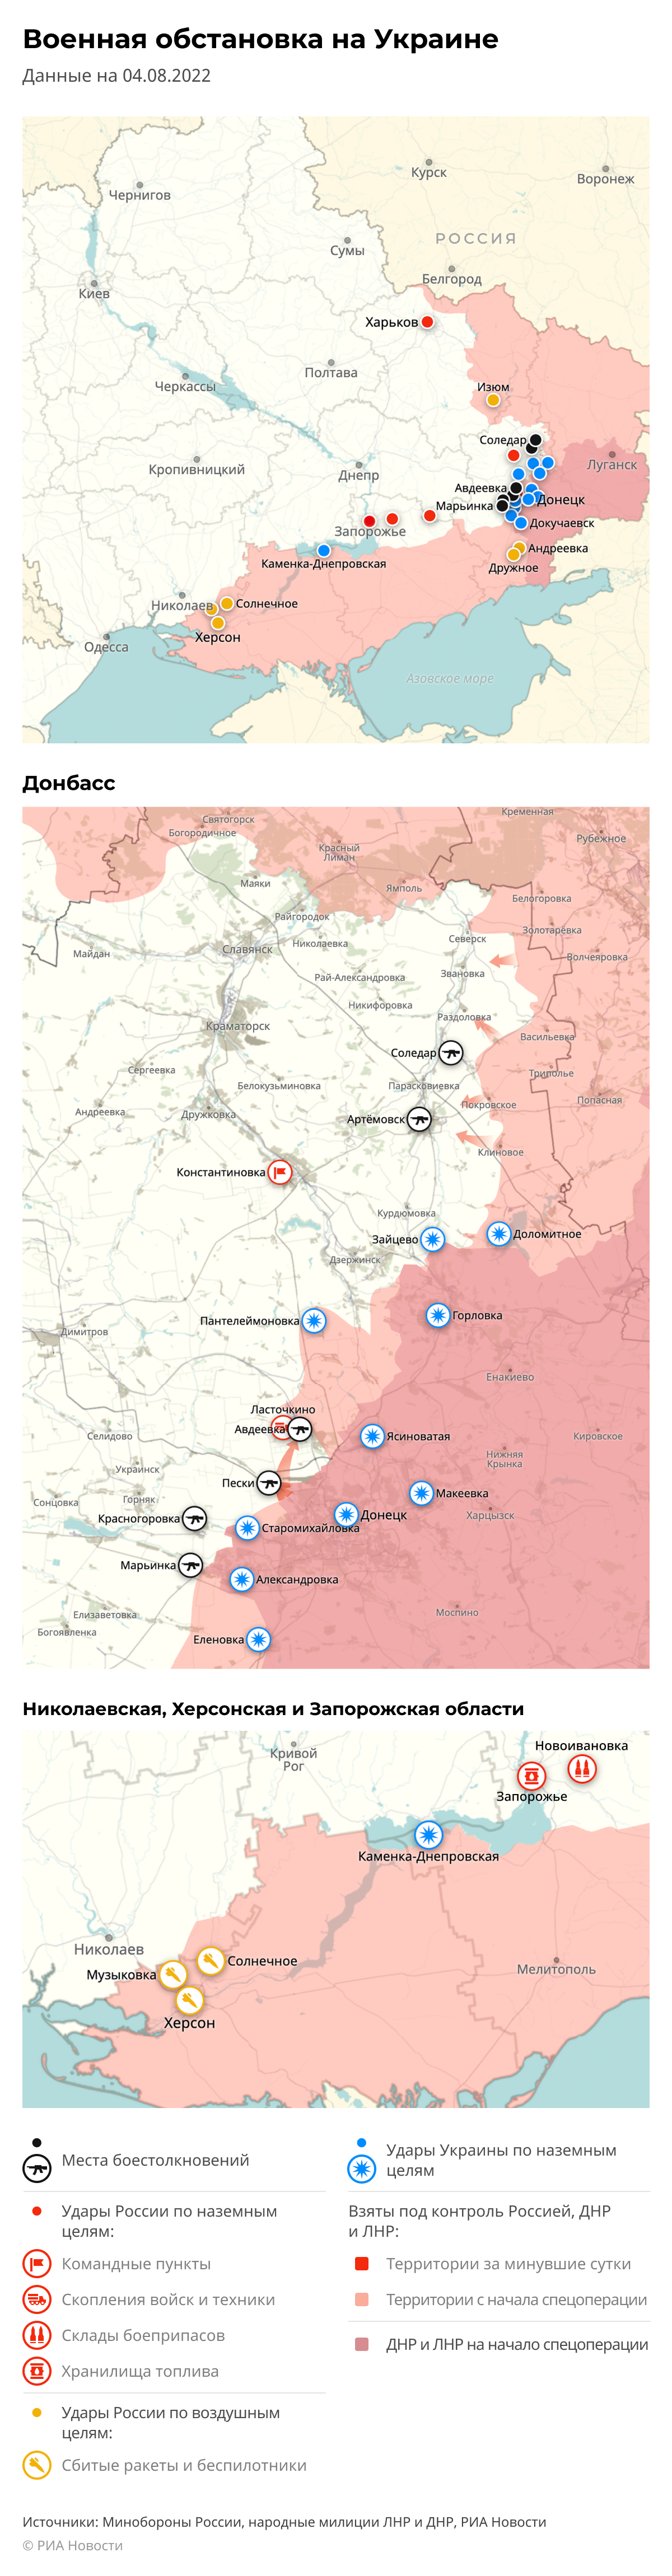 Карта спецоперации Вооруженных сил России на Украине на 04.08.2022